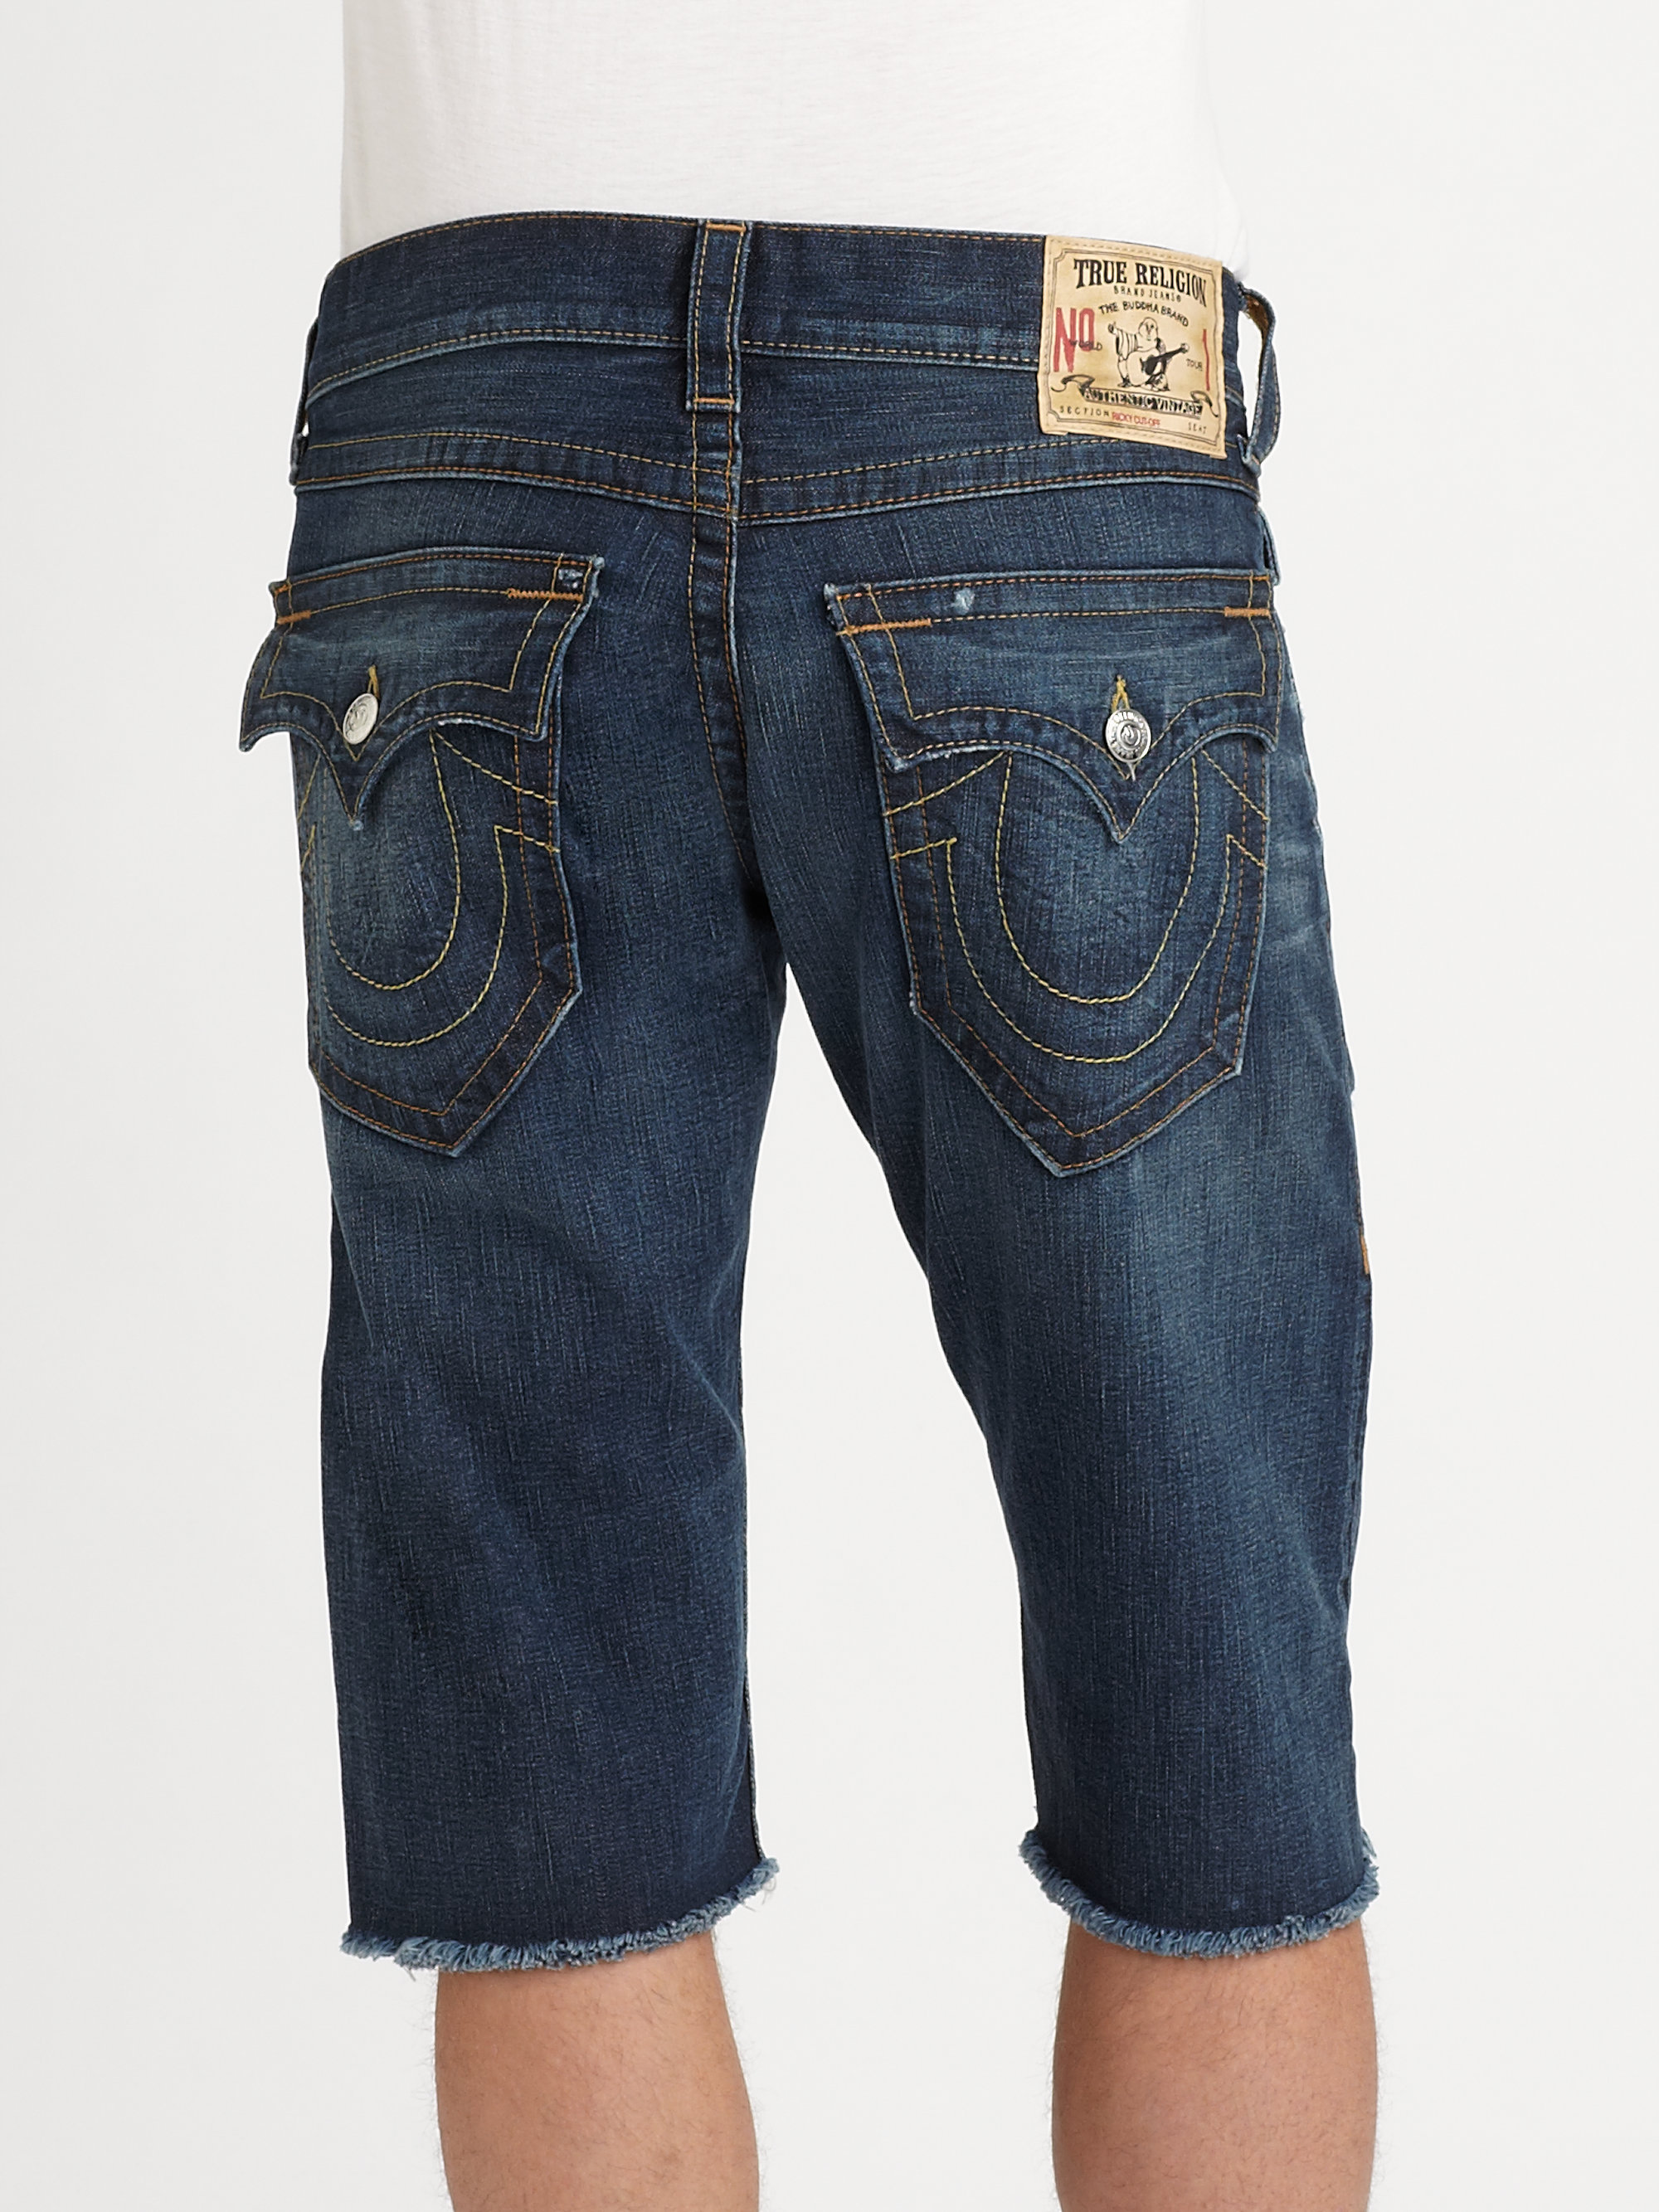 True religion Ricky Cutoff Shorts in Blue for Men | Lyst